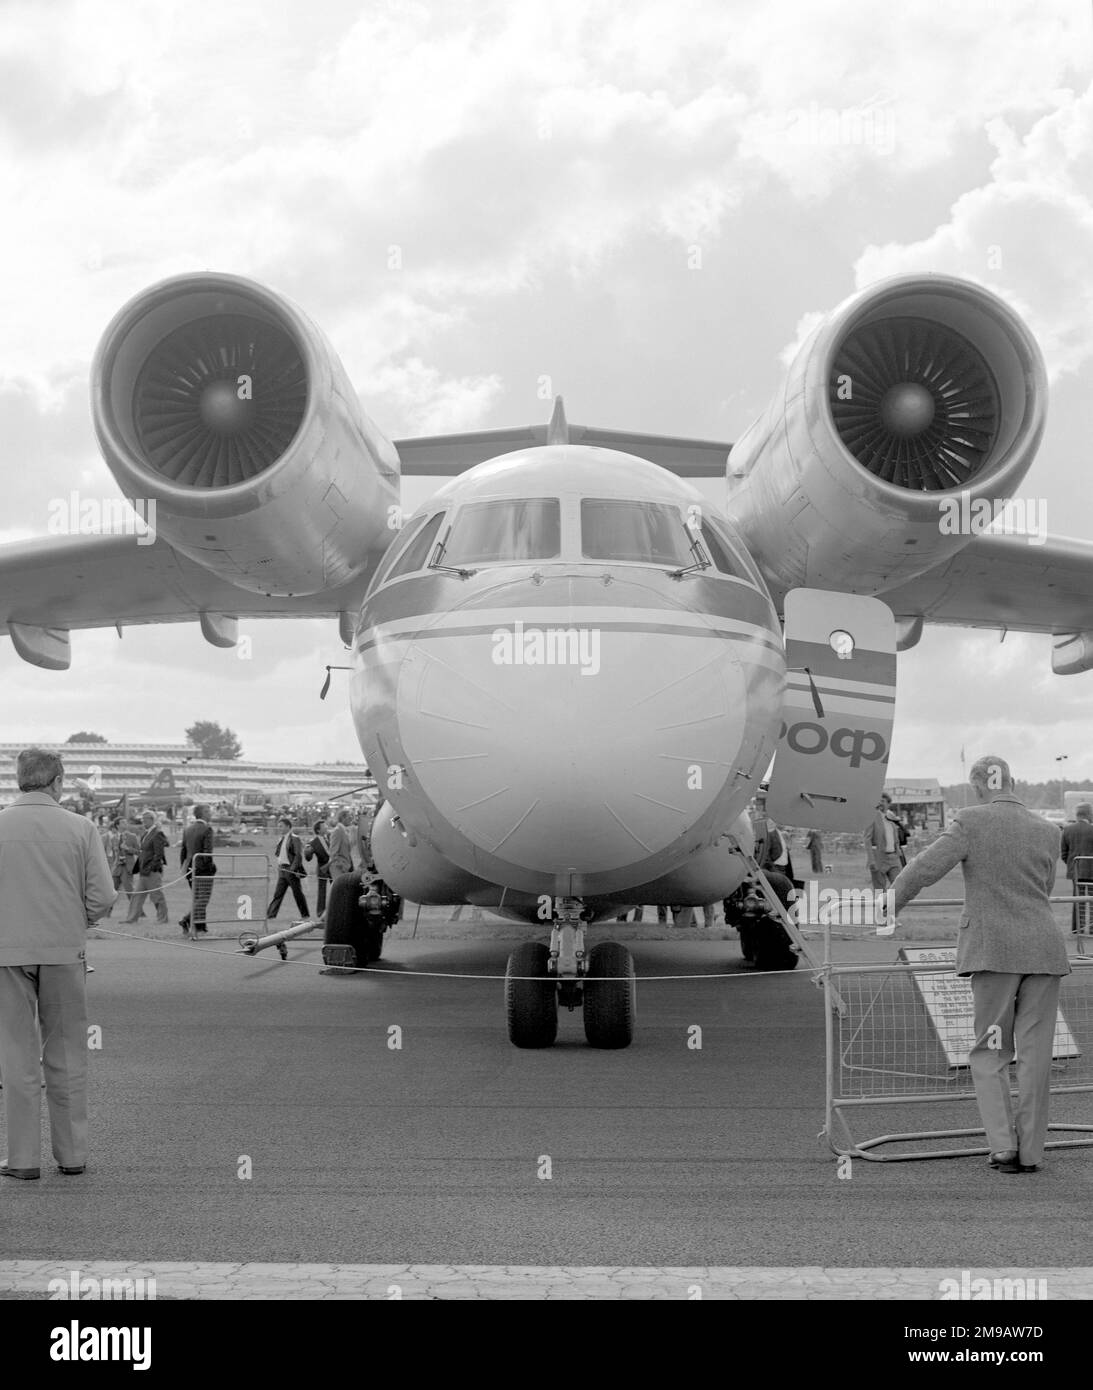 Antonov an-72 SSSR-72000 (msn 005), au salon de l'air 1984 du SBAC Farnborough, qui s'est tenu du 2-9 au 22 septembre. (Note : l'Union soviétique a utilisé des lettres cyrilliques dans leurs enregistrements d'aéronefs CCCP en cyrillique est SSSR en lettres anglaises). Banque D'Images